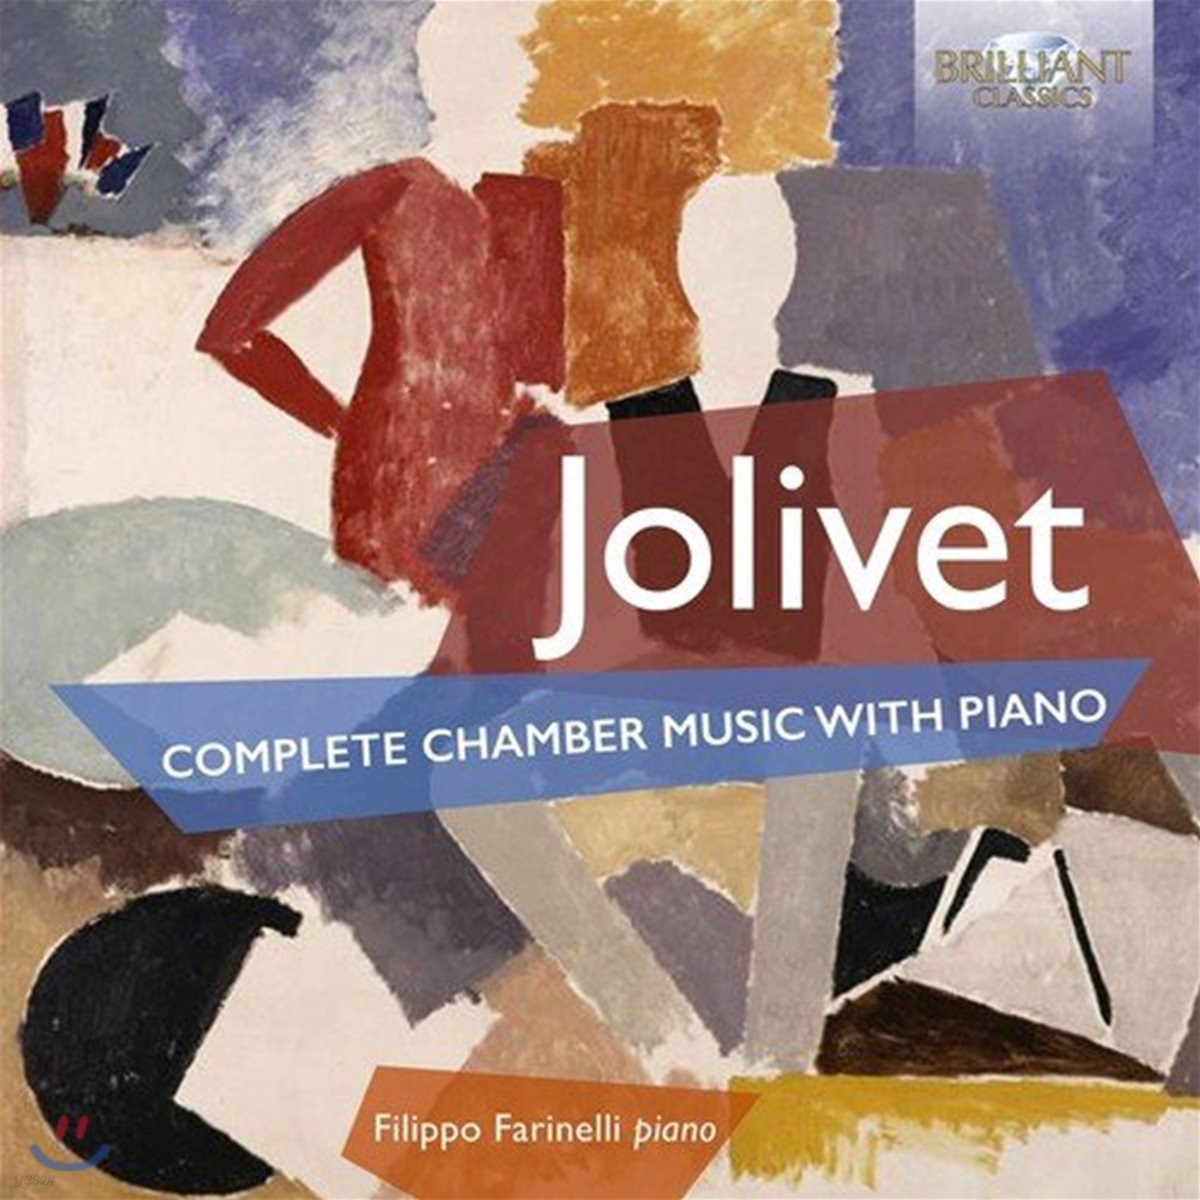 Filippo Farinelli 졸리베: 피아노 실내악 전곡집 - 필리포 파리넬리 (Andre Jolivet: Complete Chamber Music with Piano)